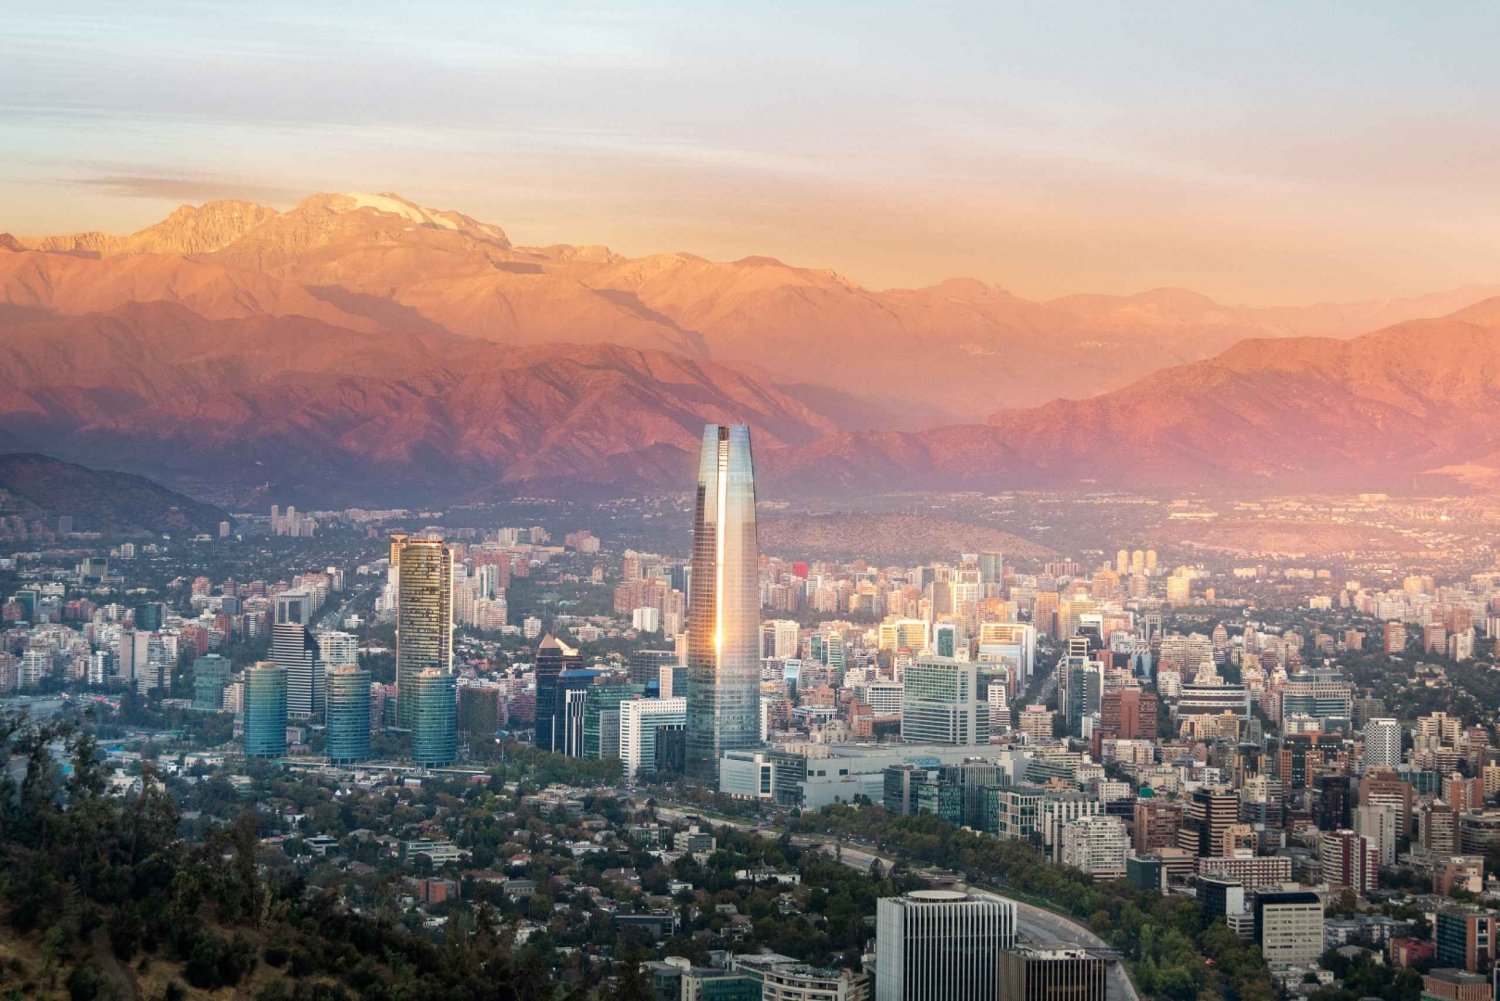 Zonsondergang in Santiago: Plaatsen waar je de beste zonsondergangen kunt zien